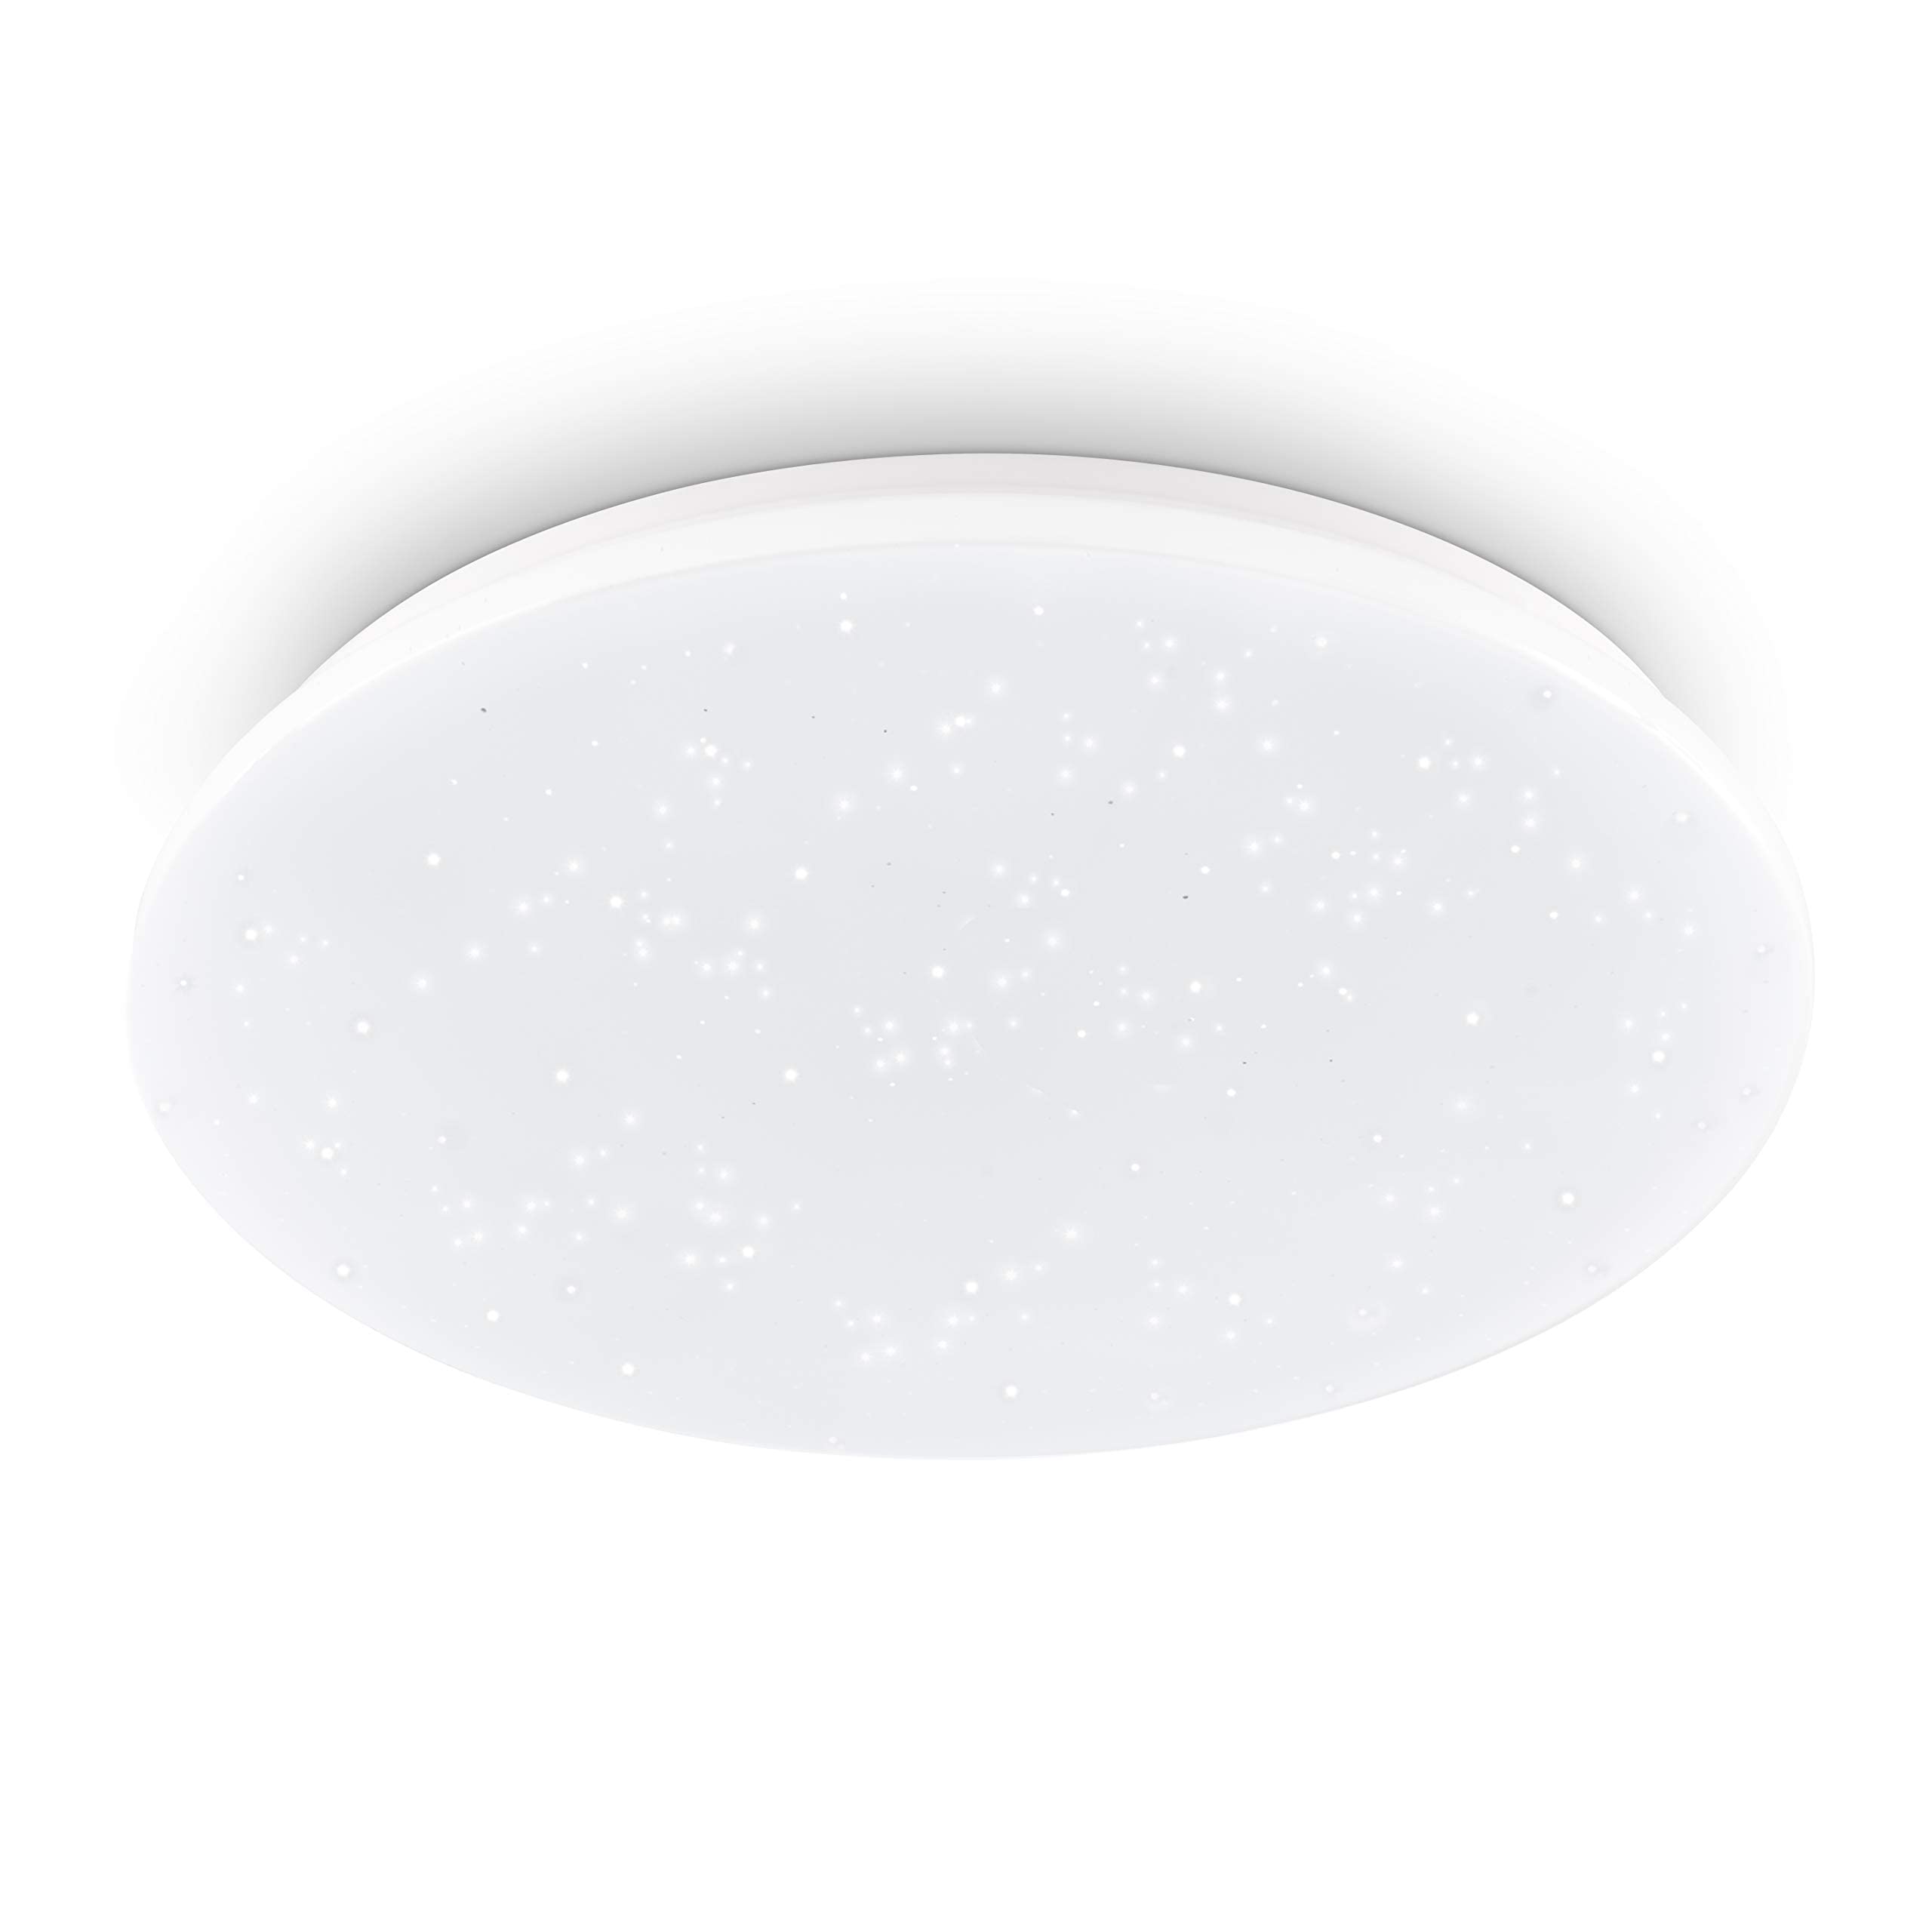 EGLO Deckenlampe Pogliola-S, Ø 50 cm, Kristalleffekt LED Deckenleuchte, 1 flammige Wohnzimmerlampe aus Stahl und Kunststoff, Lampe weiß, Kinderzimmerlampe, Küchenlampe, Bürolampe, Flurlampe Decke